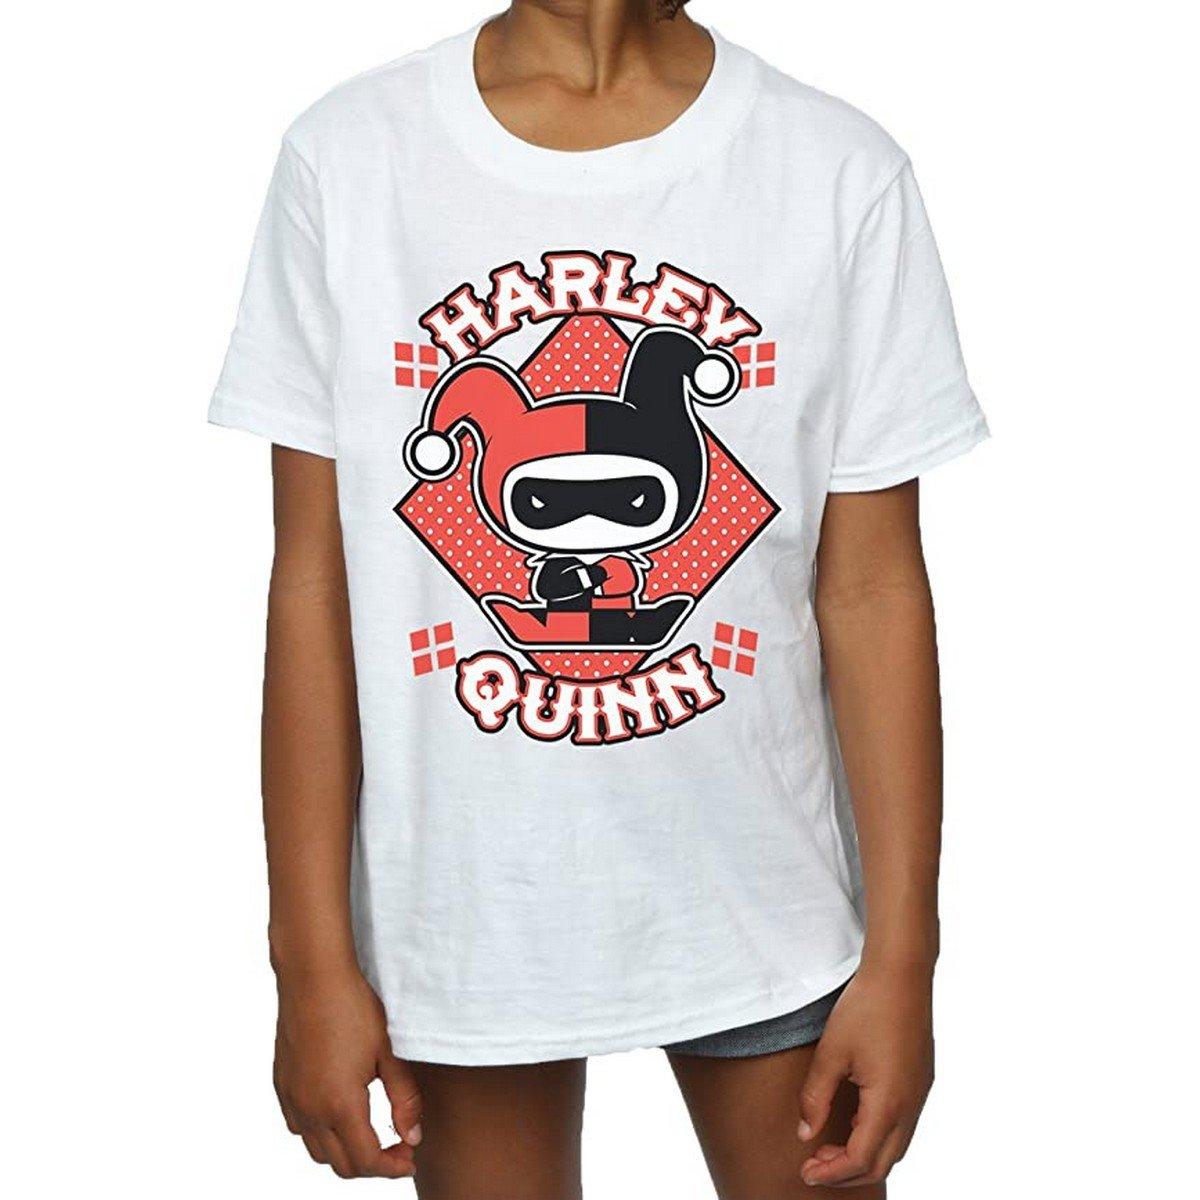 Tshirt Mädchen Weiss 128 von Harley Quinn